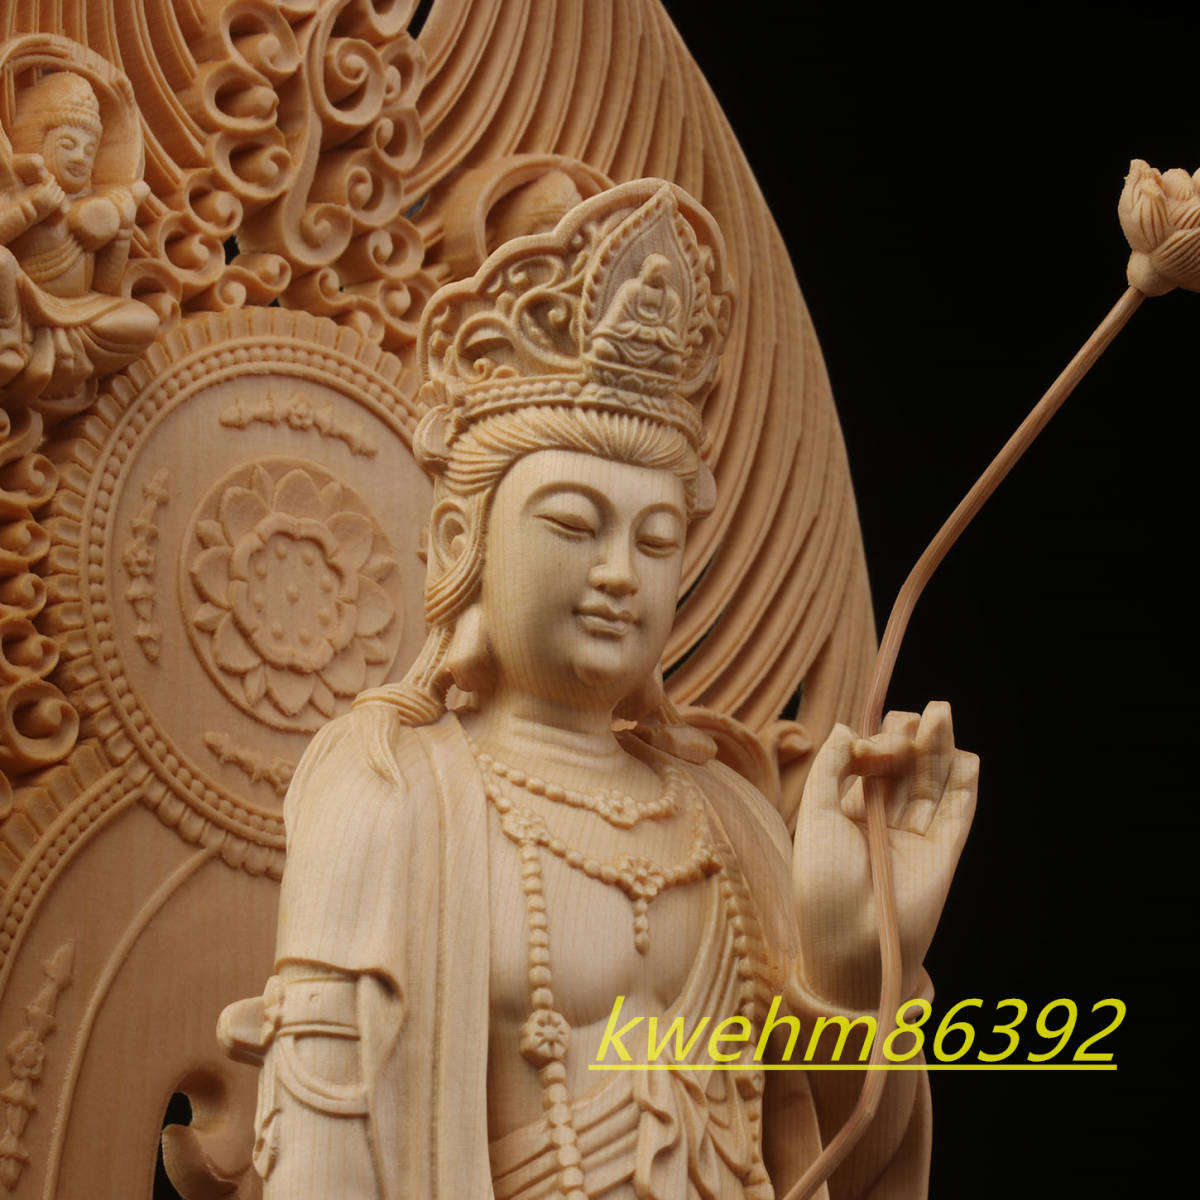 最高級 木彫り 仏像 薬師三尊立像 彫刻 一刀彫 天然木檜材 仏教工芸